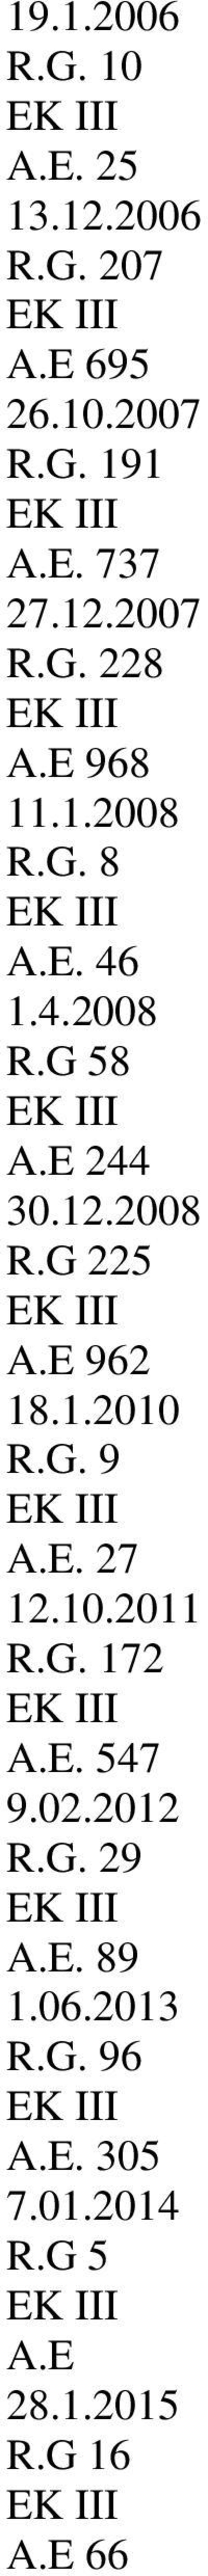 E 962 18.1.2010 R.G. 9 A.E. 27 12.10.2011 R.G. 172 A.E. 547 9.02.2012 R.G. 29 A.E. 89 1.